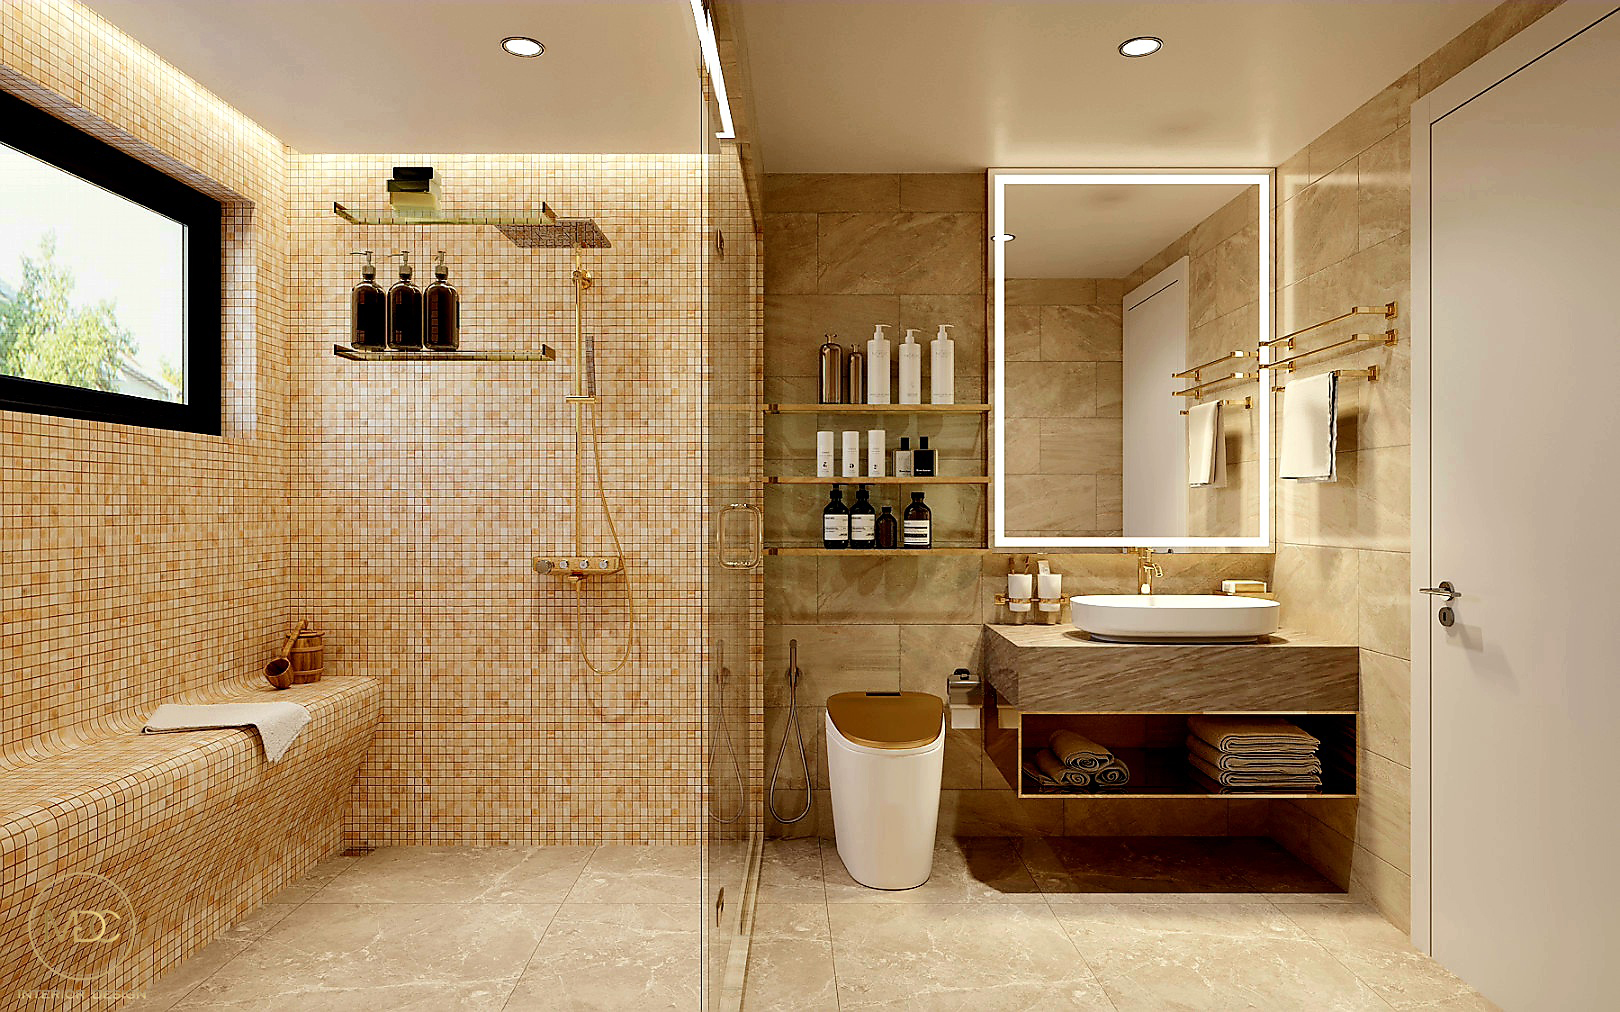 Không gian phòng tắm được thiết kế theo phong cách hiện đại. Sử dụng tone màu vàng sáng làm màu chủ đạo.